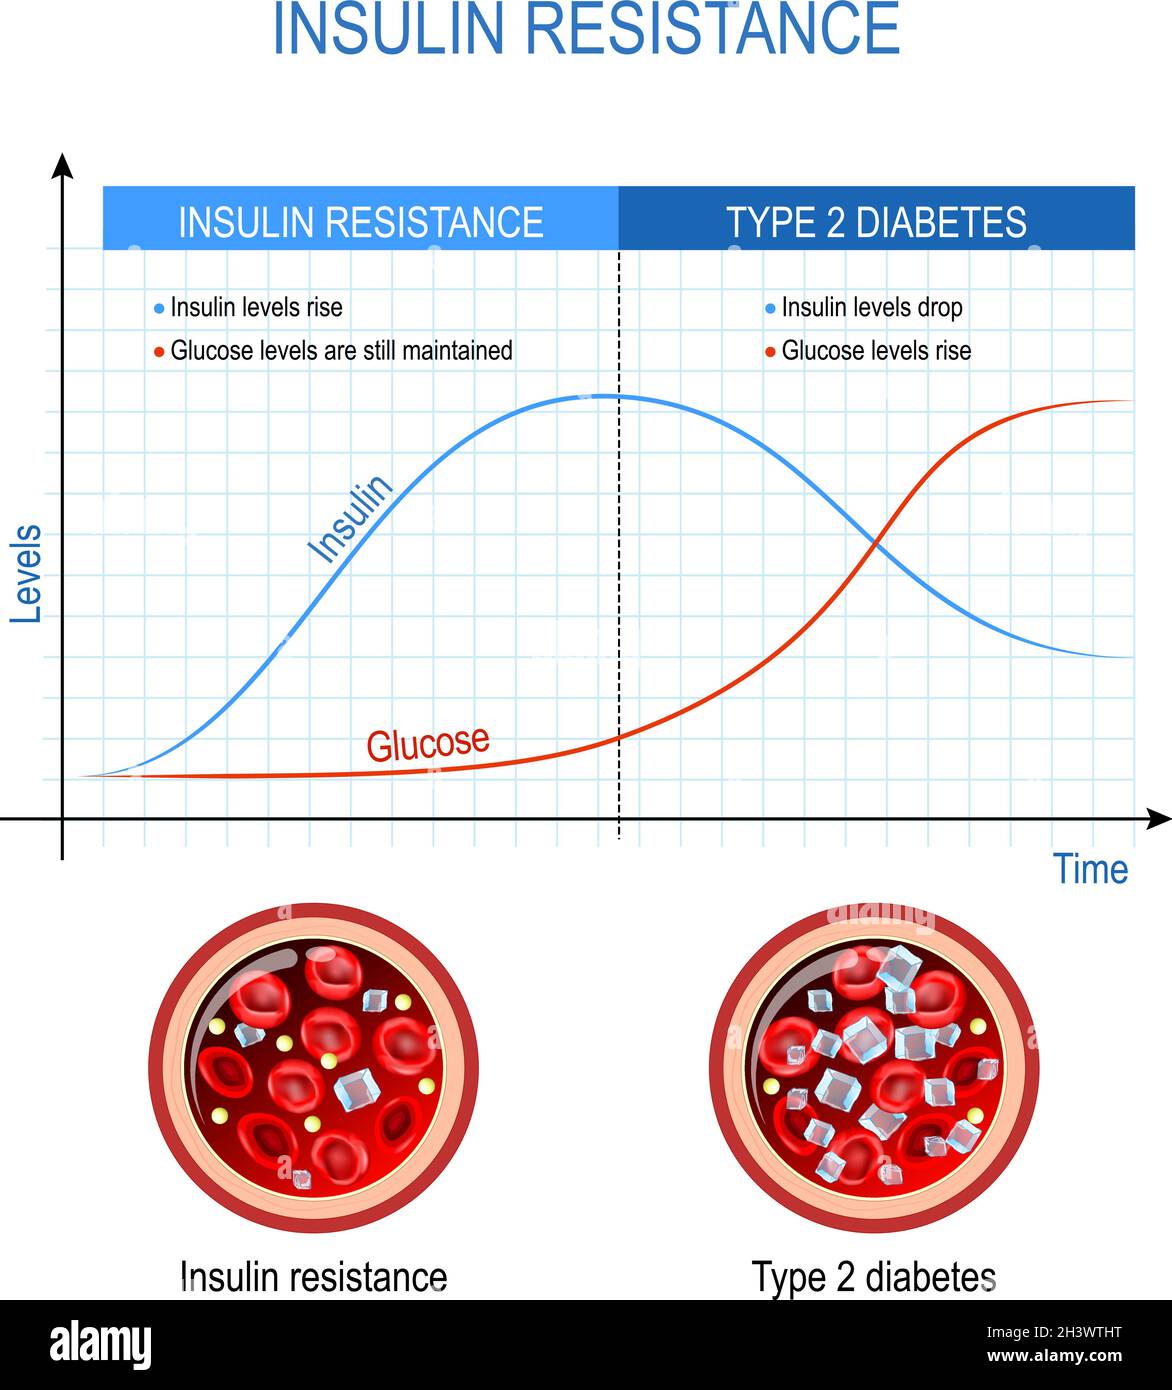 Résistance à l'insuline et diabète de type 2. Comparaison et différence. Taux élevé de sucre dans le sang.Graphique avec les niveaux d'insuline et de glucose.Coupe transversale de sang Illustration de Vecteur